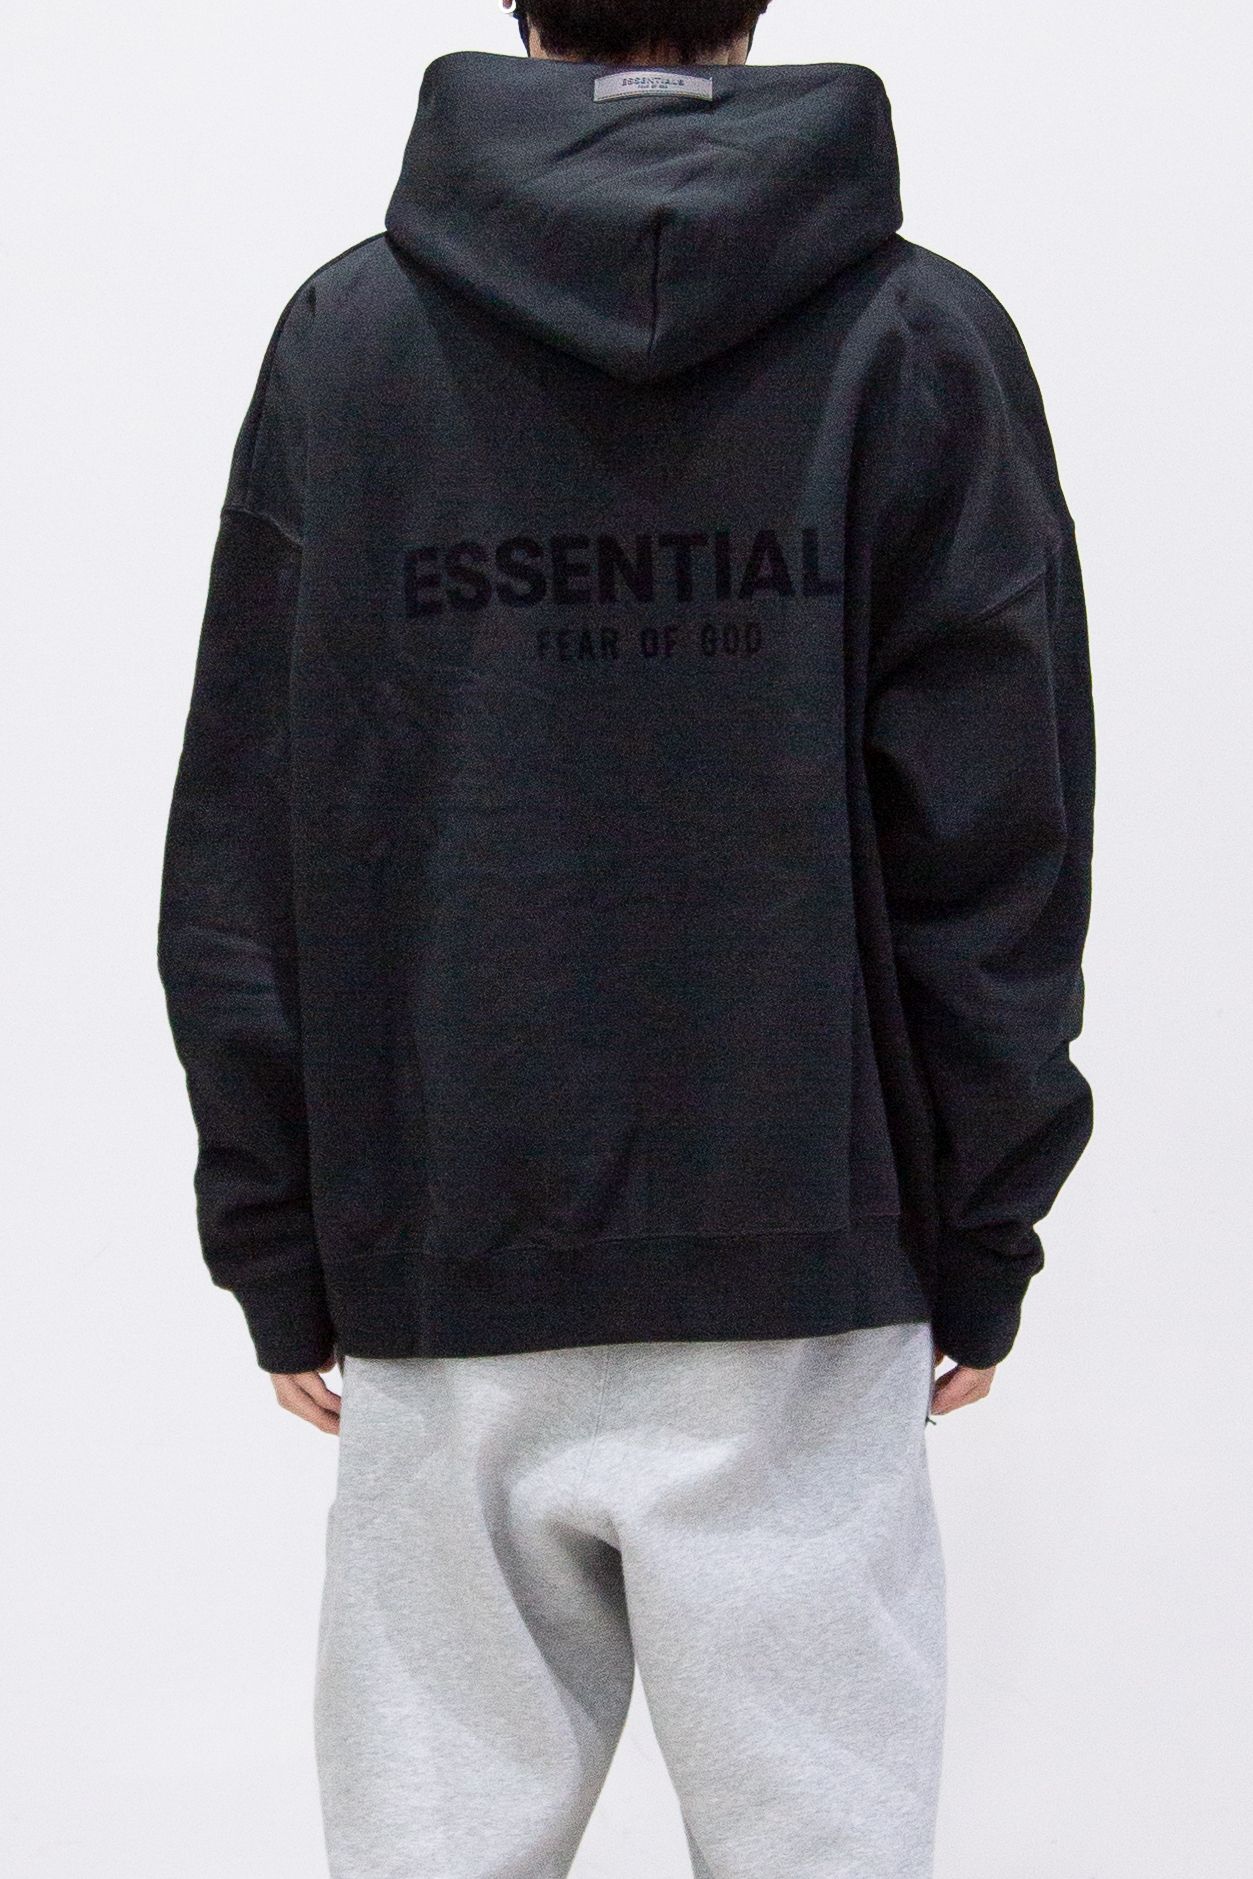 FOG essentials black hoodie